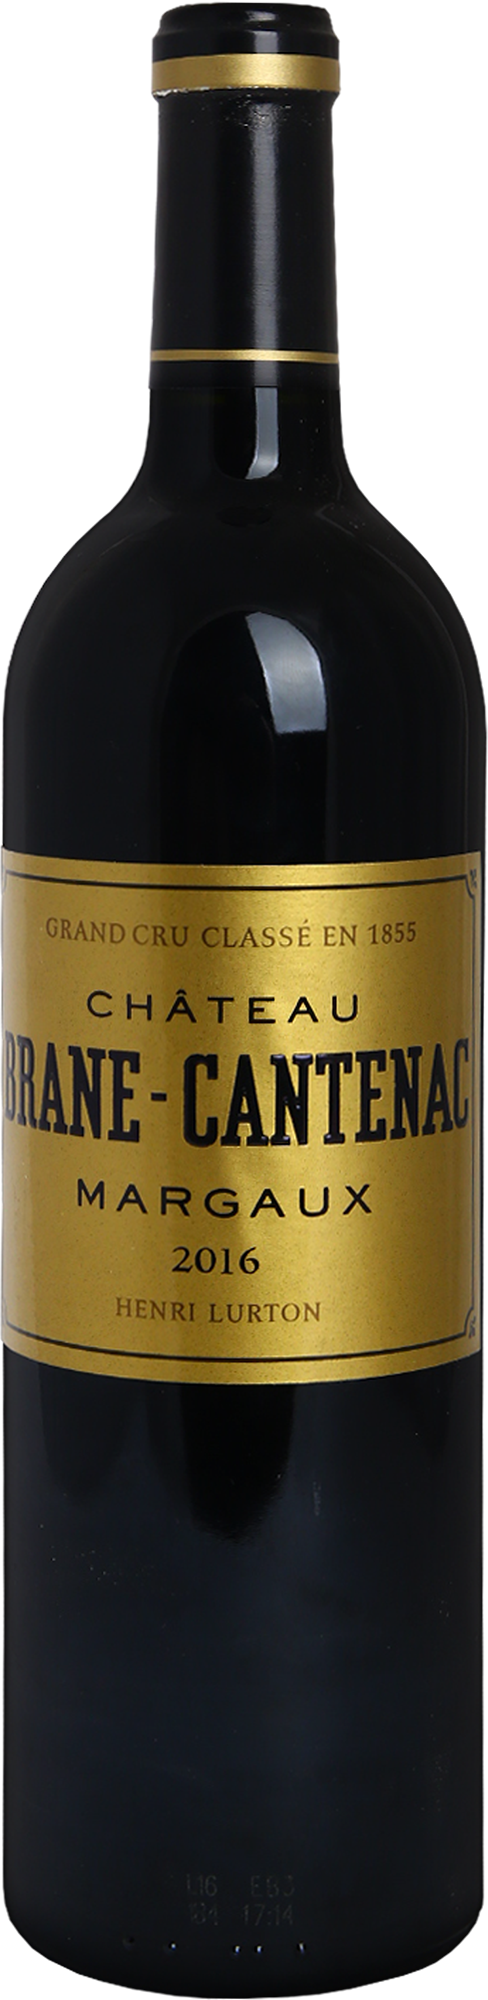 Chateau Brane-Cantenac, Grand Cru Classe, 2016